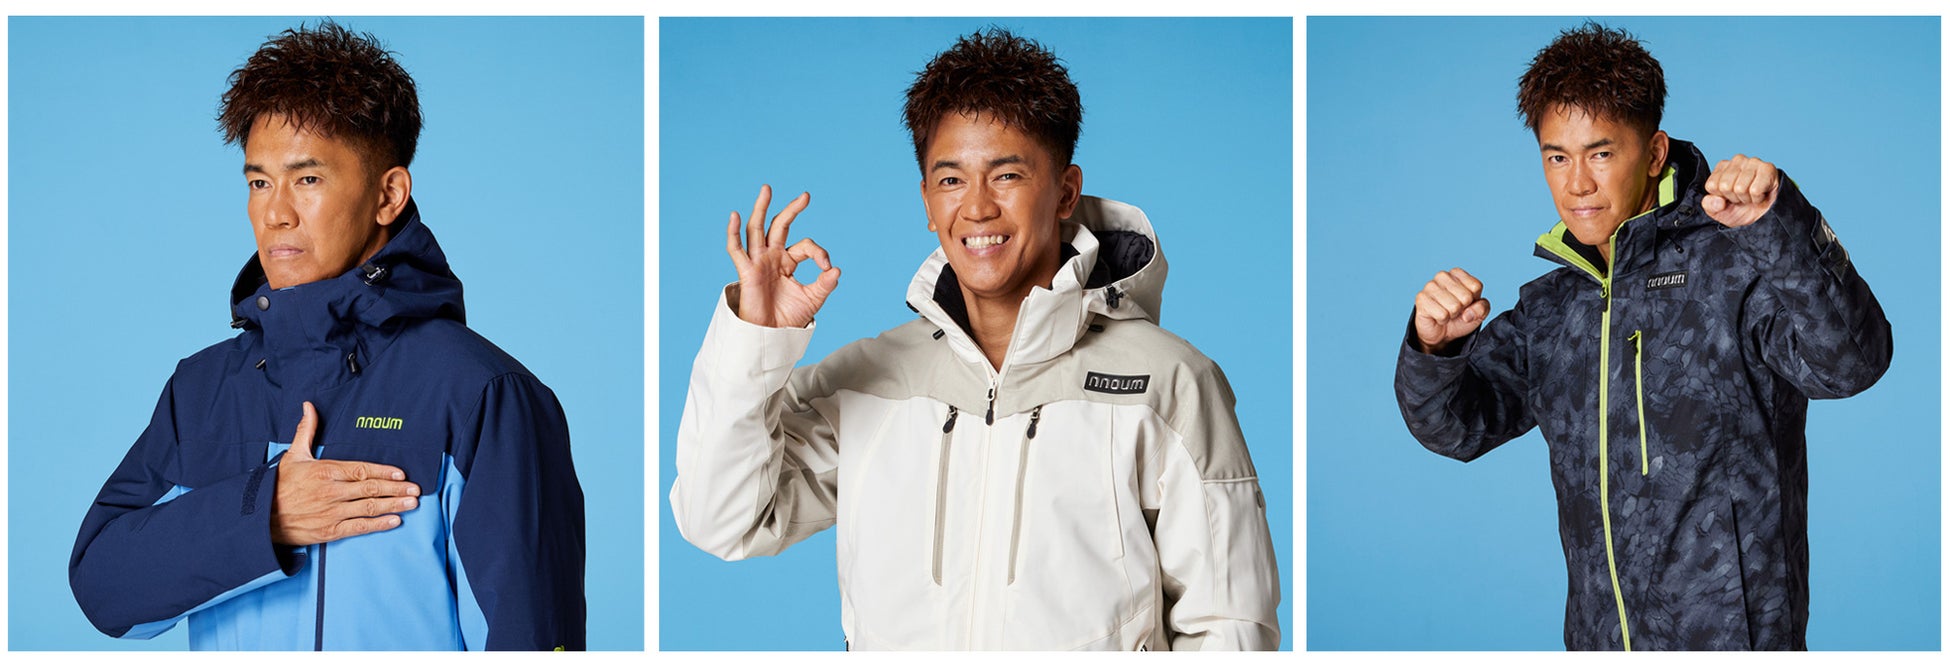 武井壮、2シーズン連続でスキー用品ネット通販日本トップクラス「タナベスポーツ」公式アンバサダー、並びに「nnoum」着用モデルに！10月28日(金)よりPR活動を開始のサブ画像2